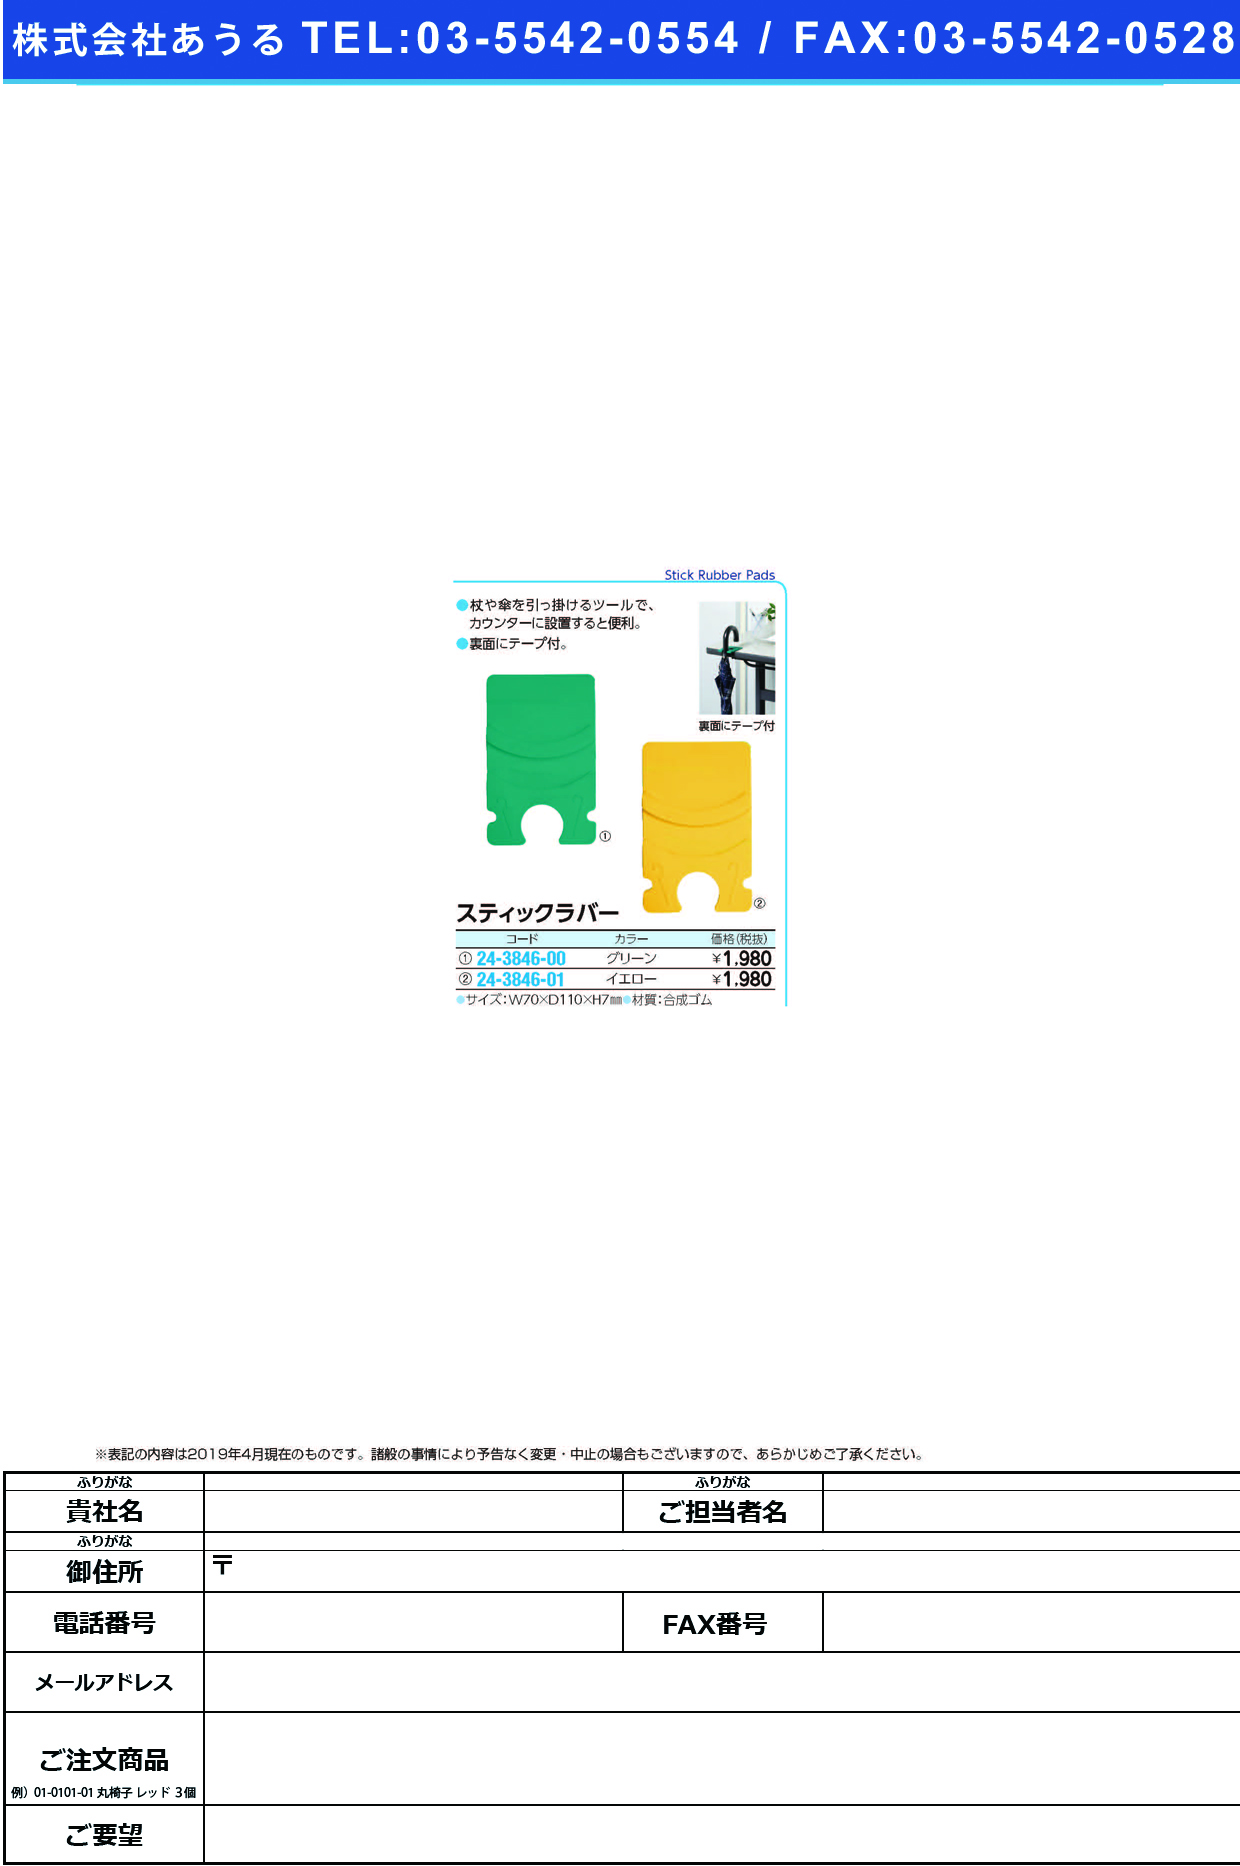 (24-3846-00)スティックラバー 23207(ｸﾞﾘｰﾝ) ｽﾃｨｯｸﾗﾊﾞｰ【1個単位】【2019年カタログ商品】